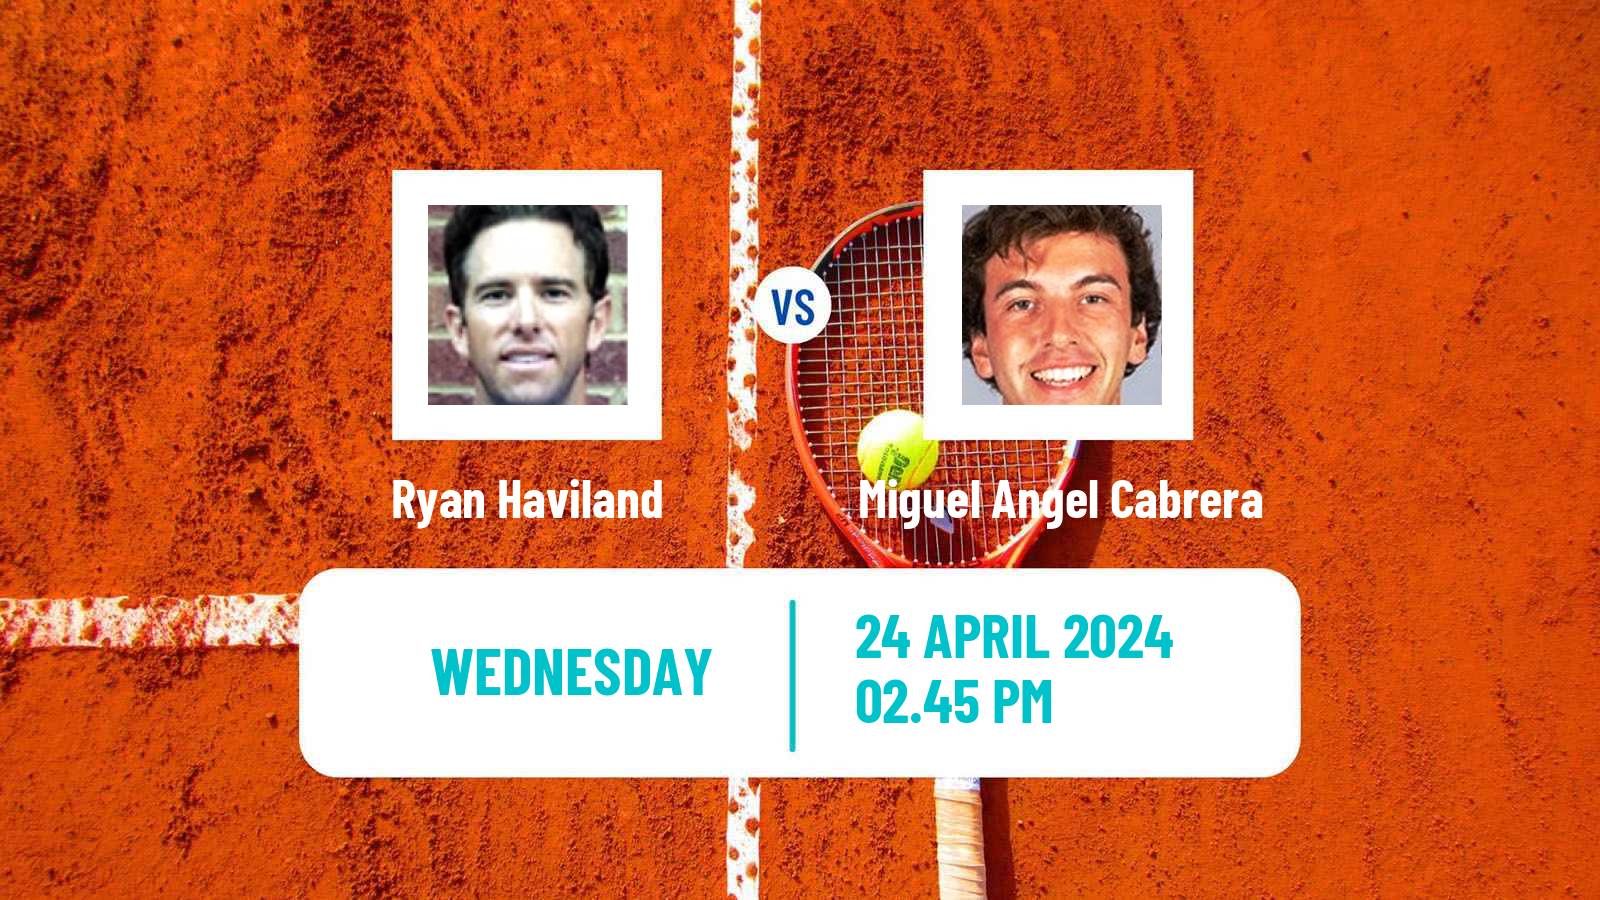 Tennis ITF M15 Vero Beach Fl Men Ryan Haviland - Miguel Angel Cabrera